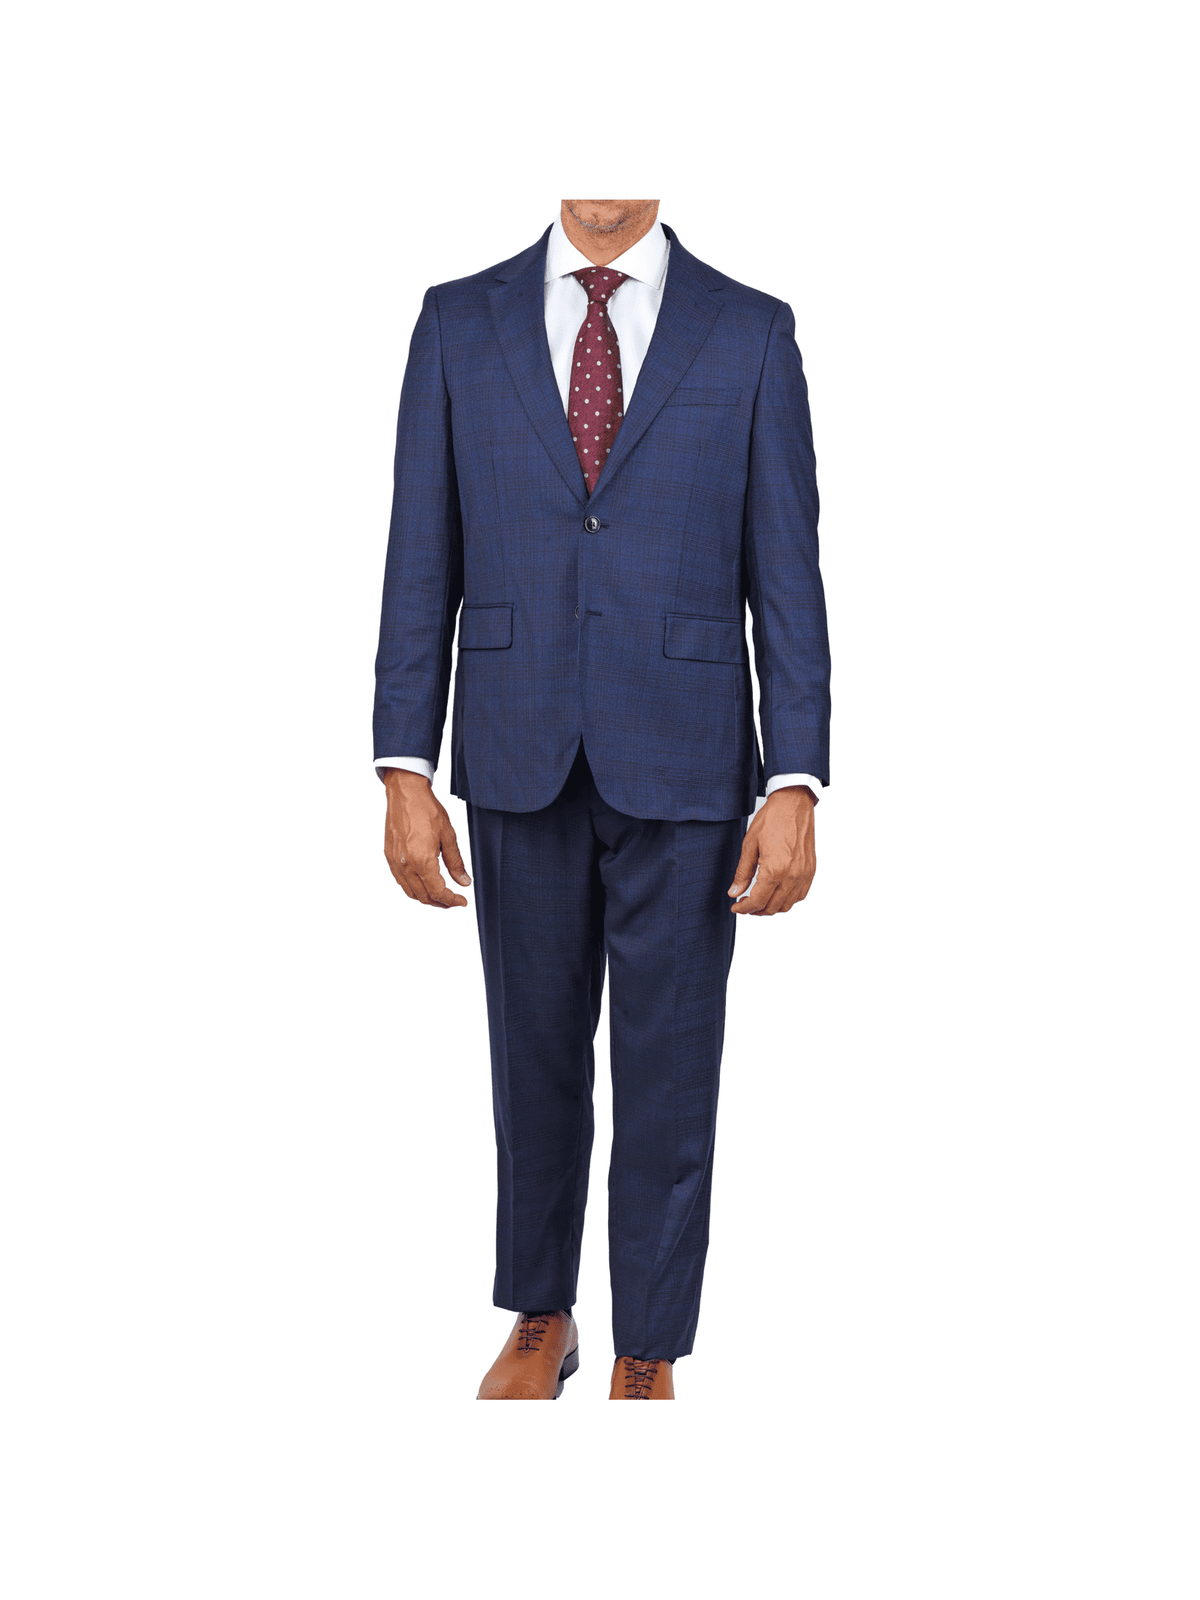 Centrion SUITS Centrion Mens Blue Plaid Regular Fit 100% Wool 2 Button Suit